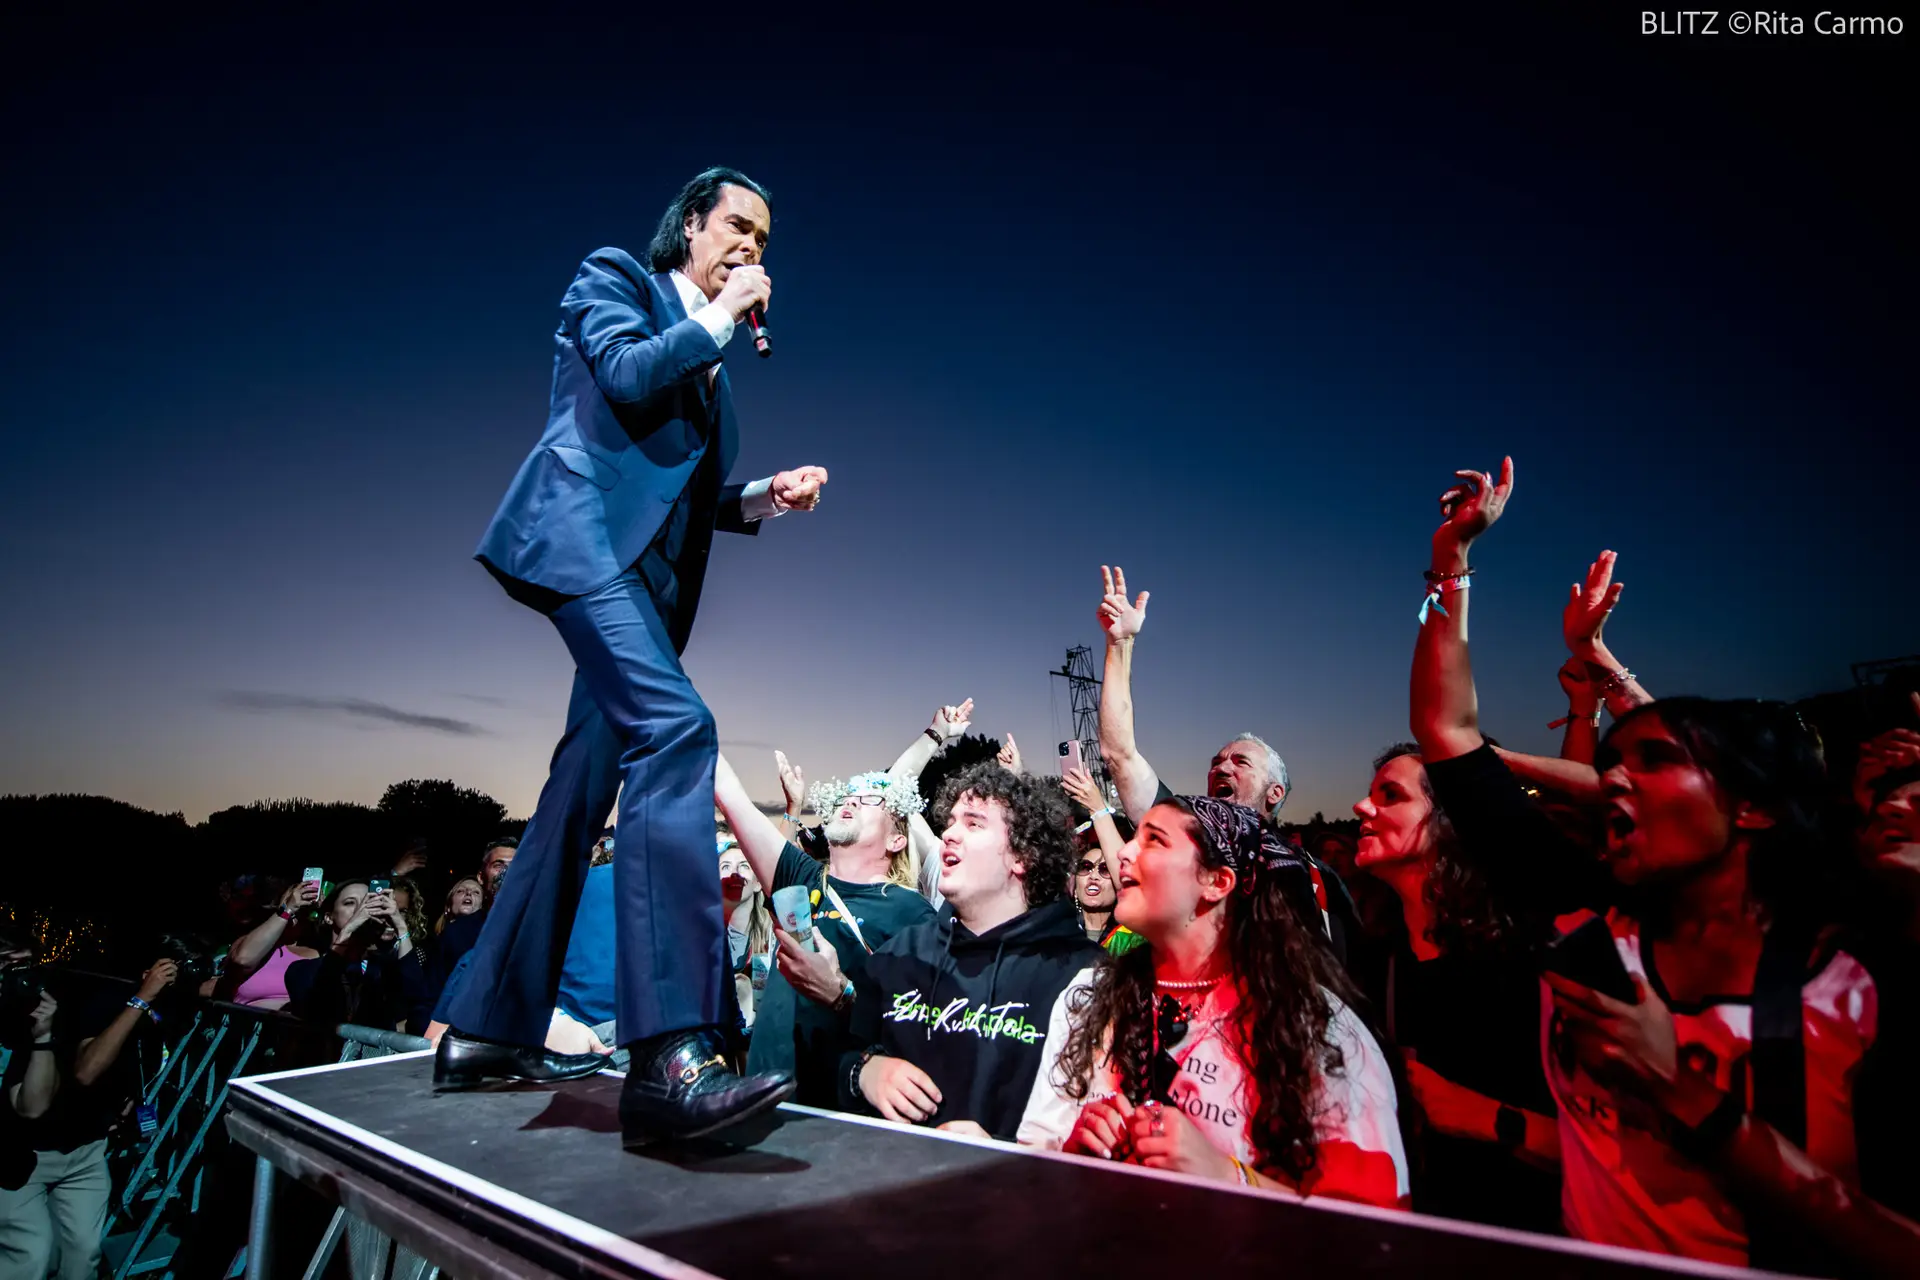 Nick Cave regressa esta noite a Lisboa para liderar a última noite do MEO Kalorama. Há três meses vimos um concerto glorioso no Porto